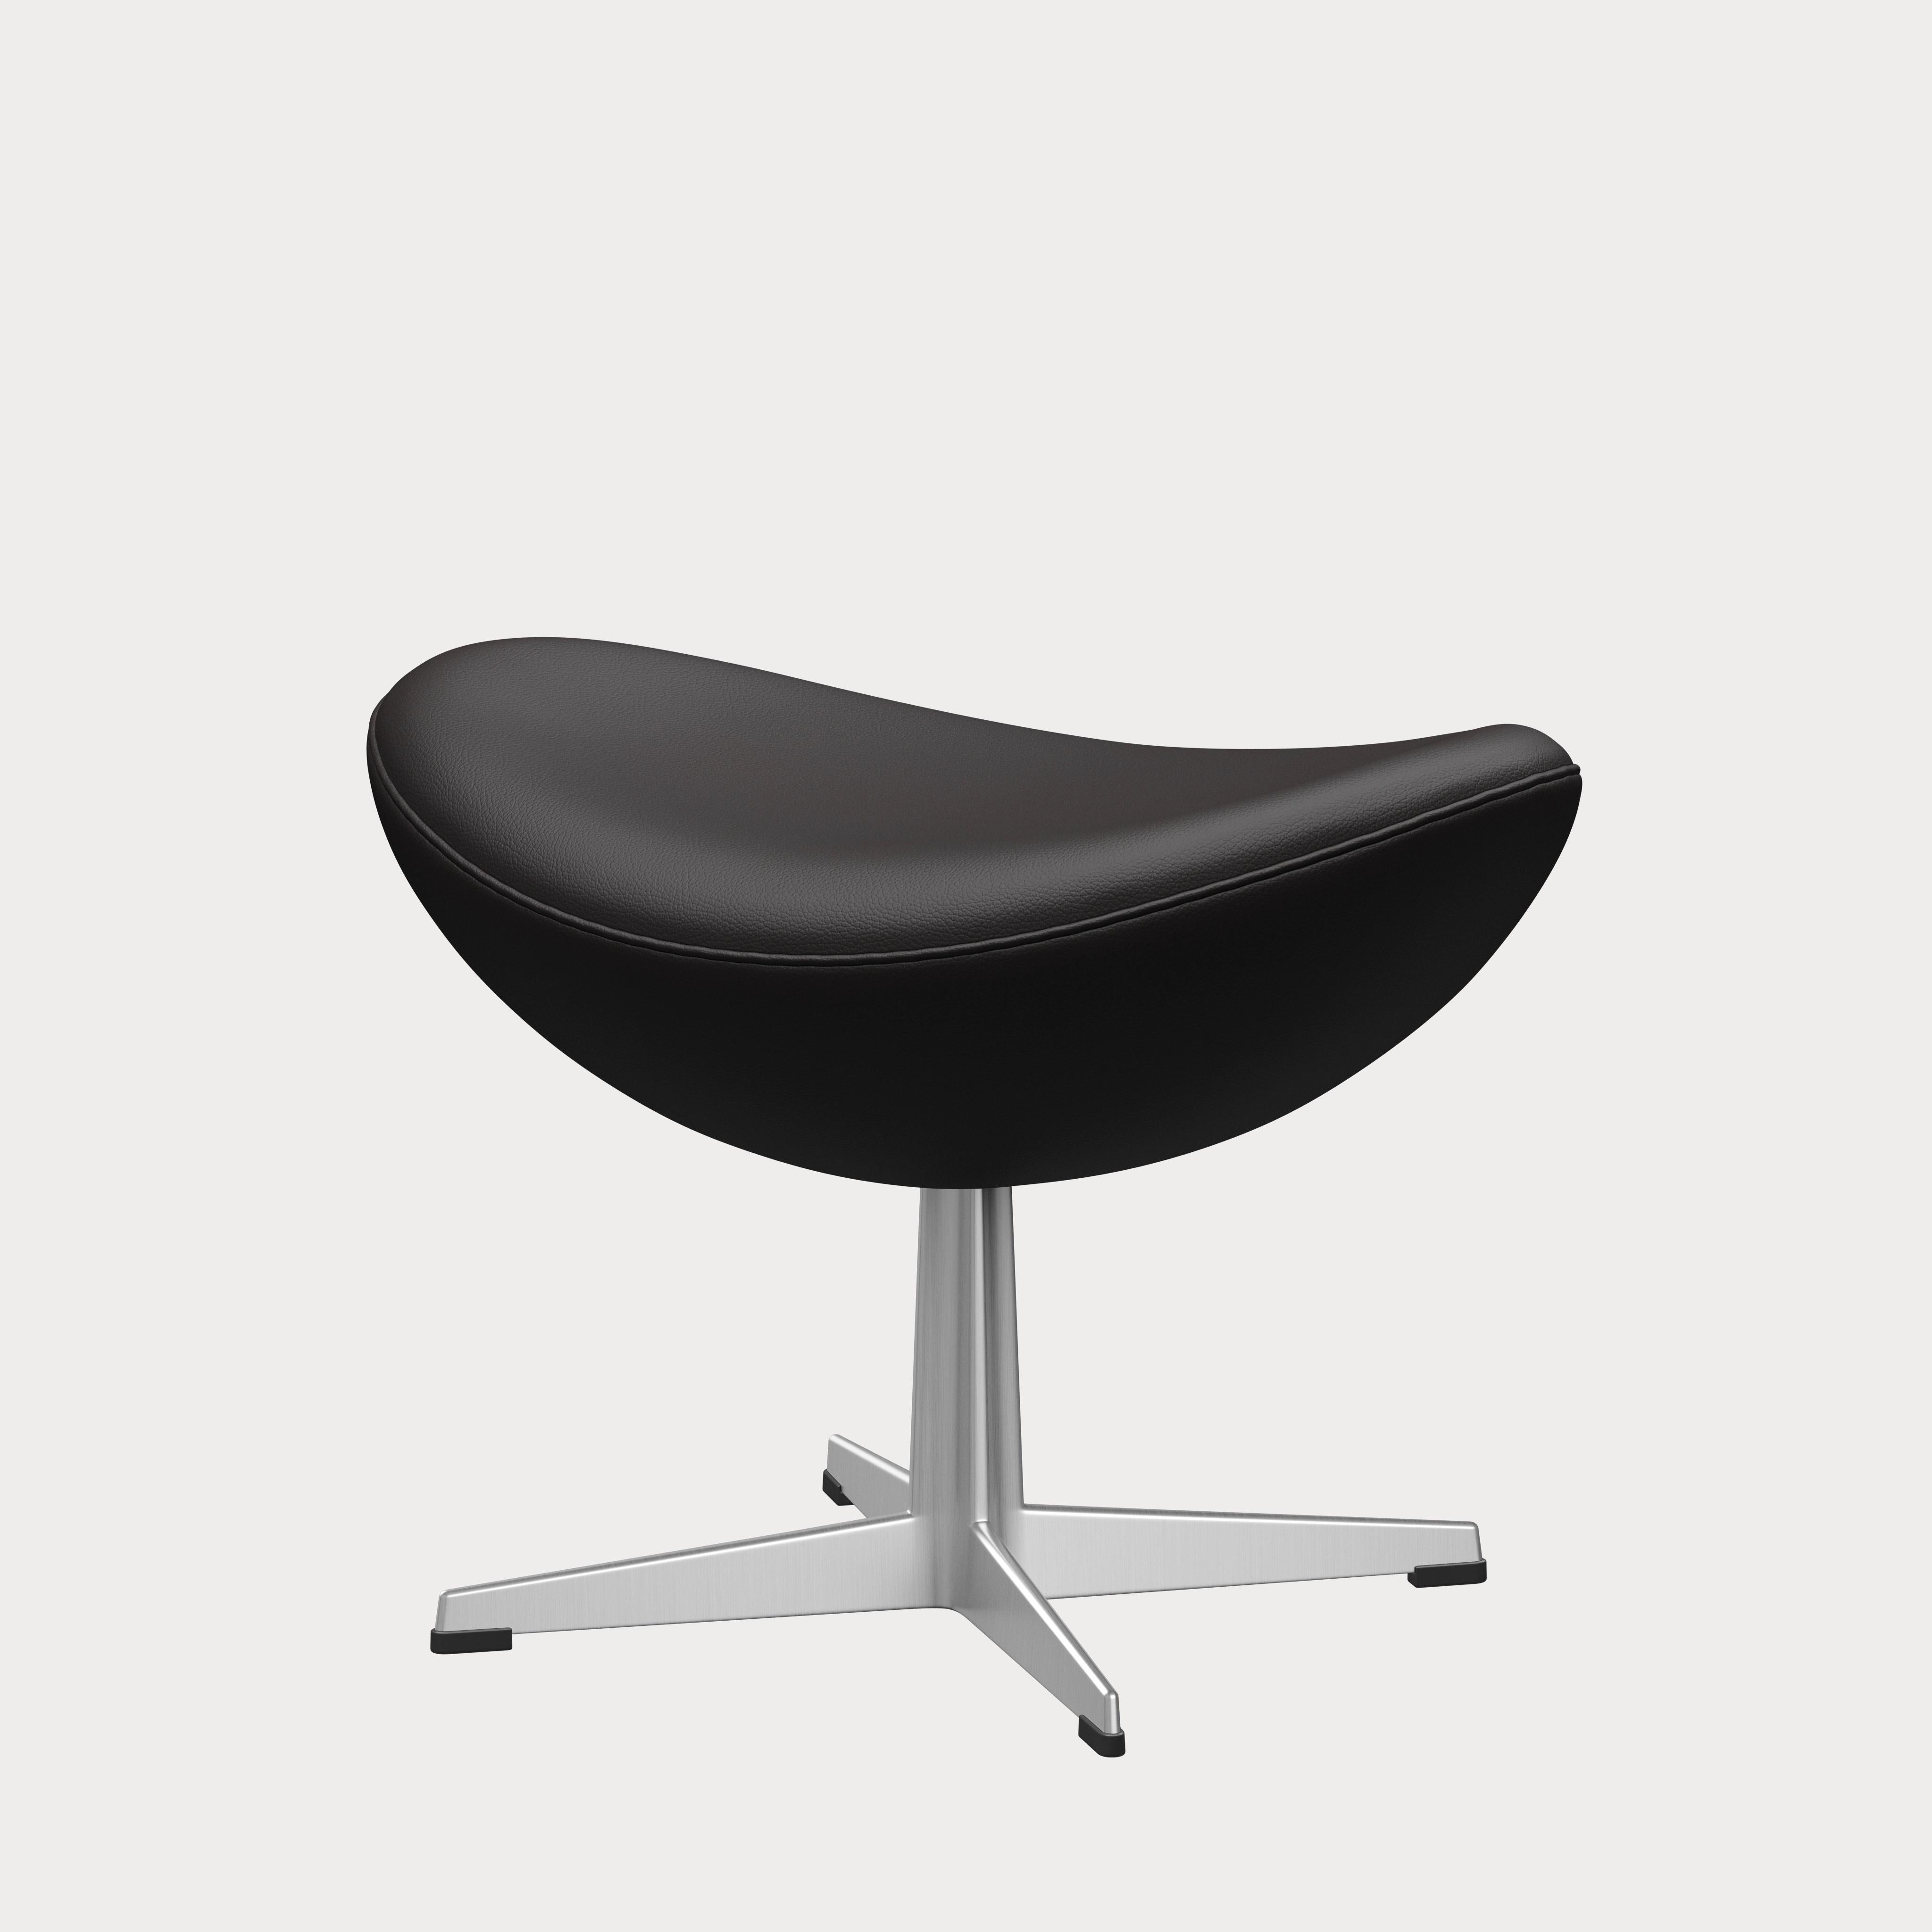 Arne Jacobsen 'Egg' Footstool for Fritz Hansen in Leather Upholstery (Cat. 4) For Sale 1